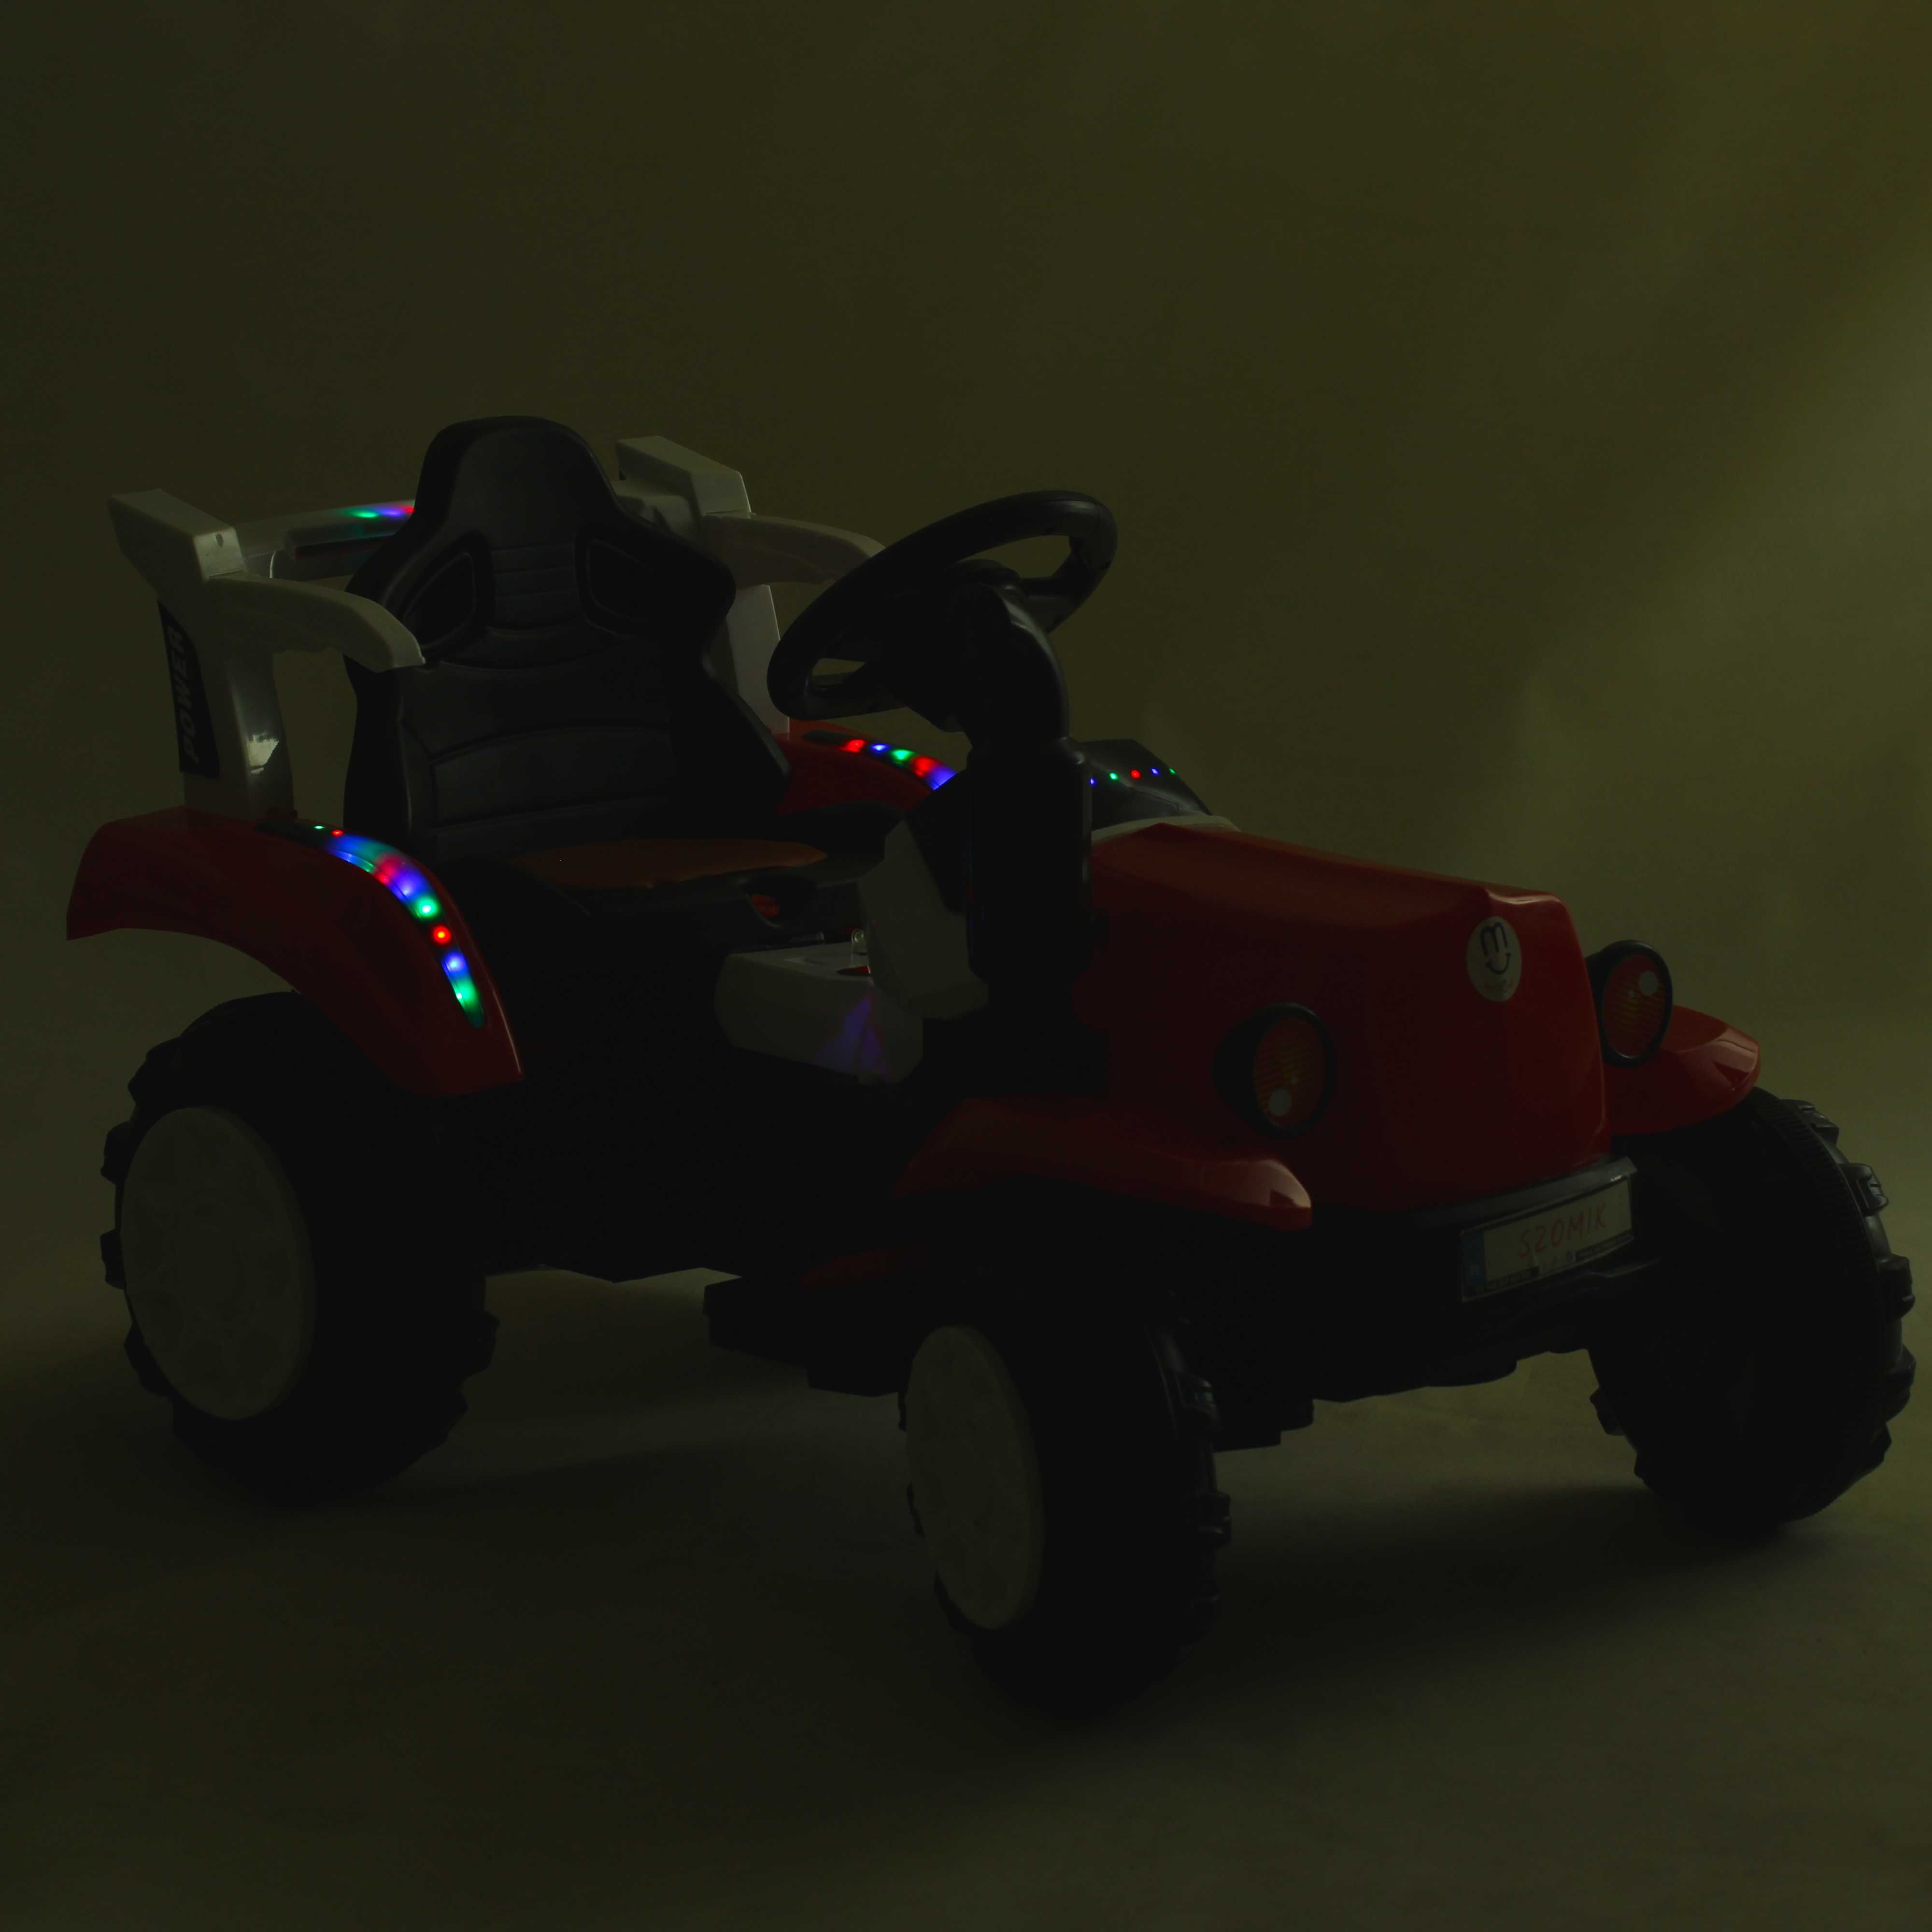 Super Traktor dla dziecka na akumulator w Najlepszej Cenie Nowość